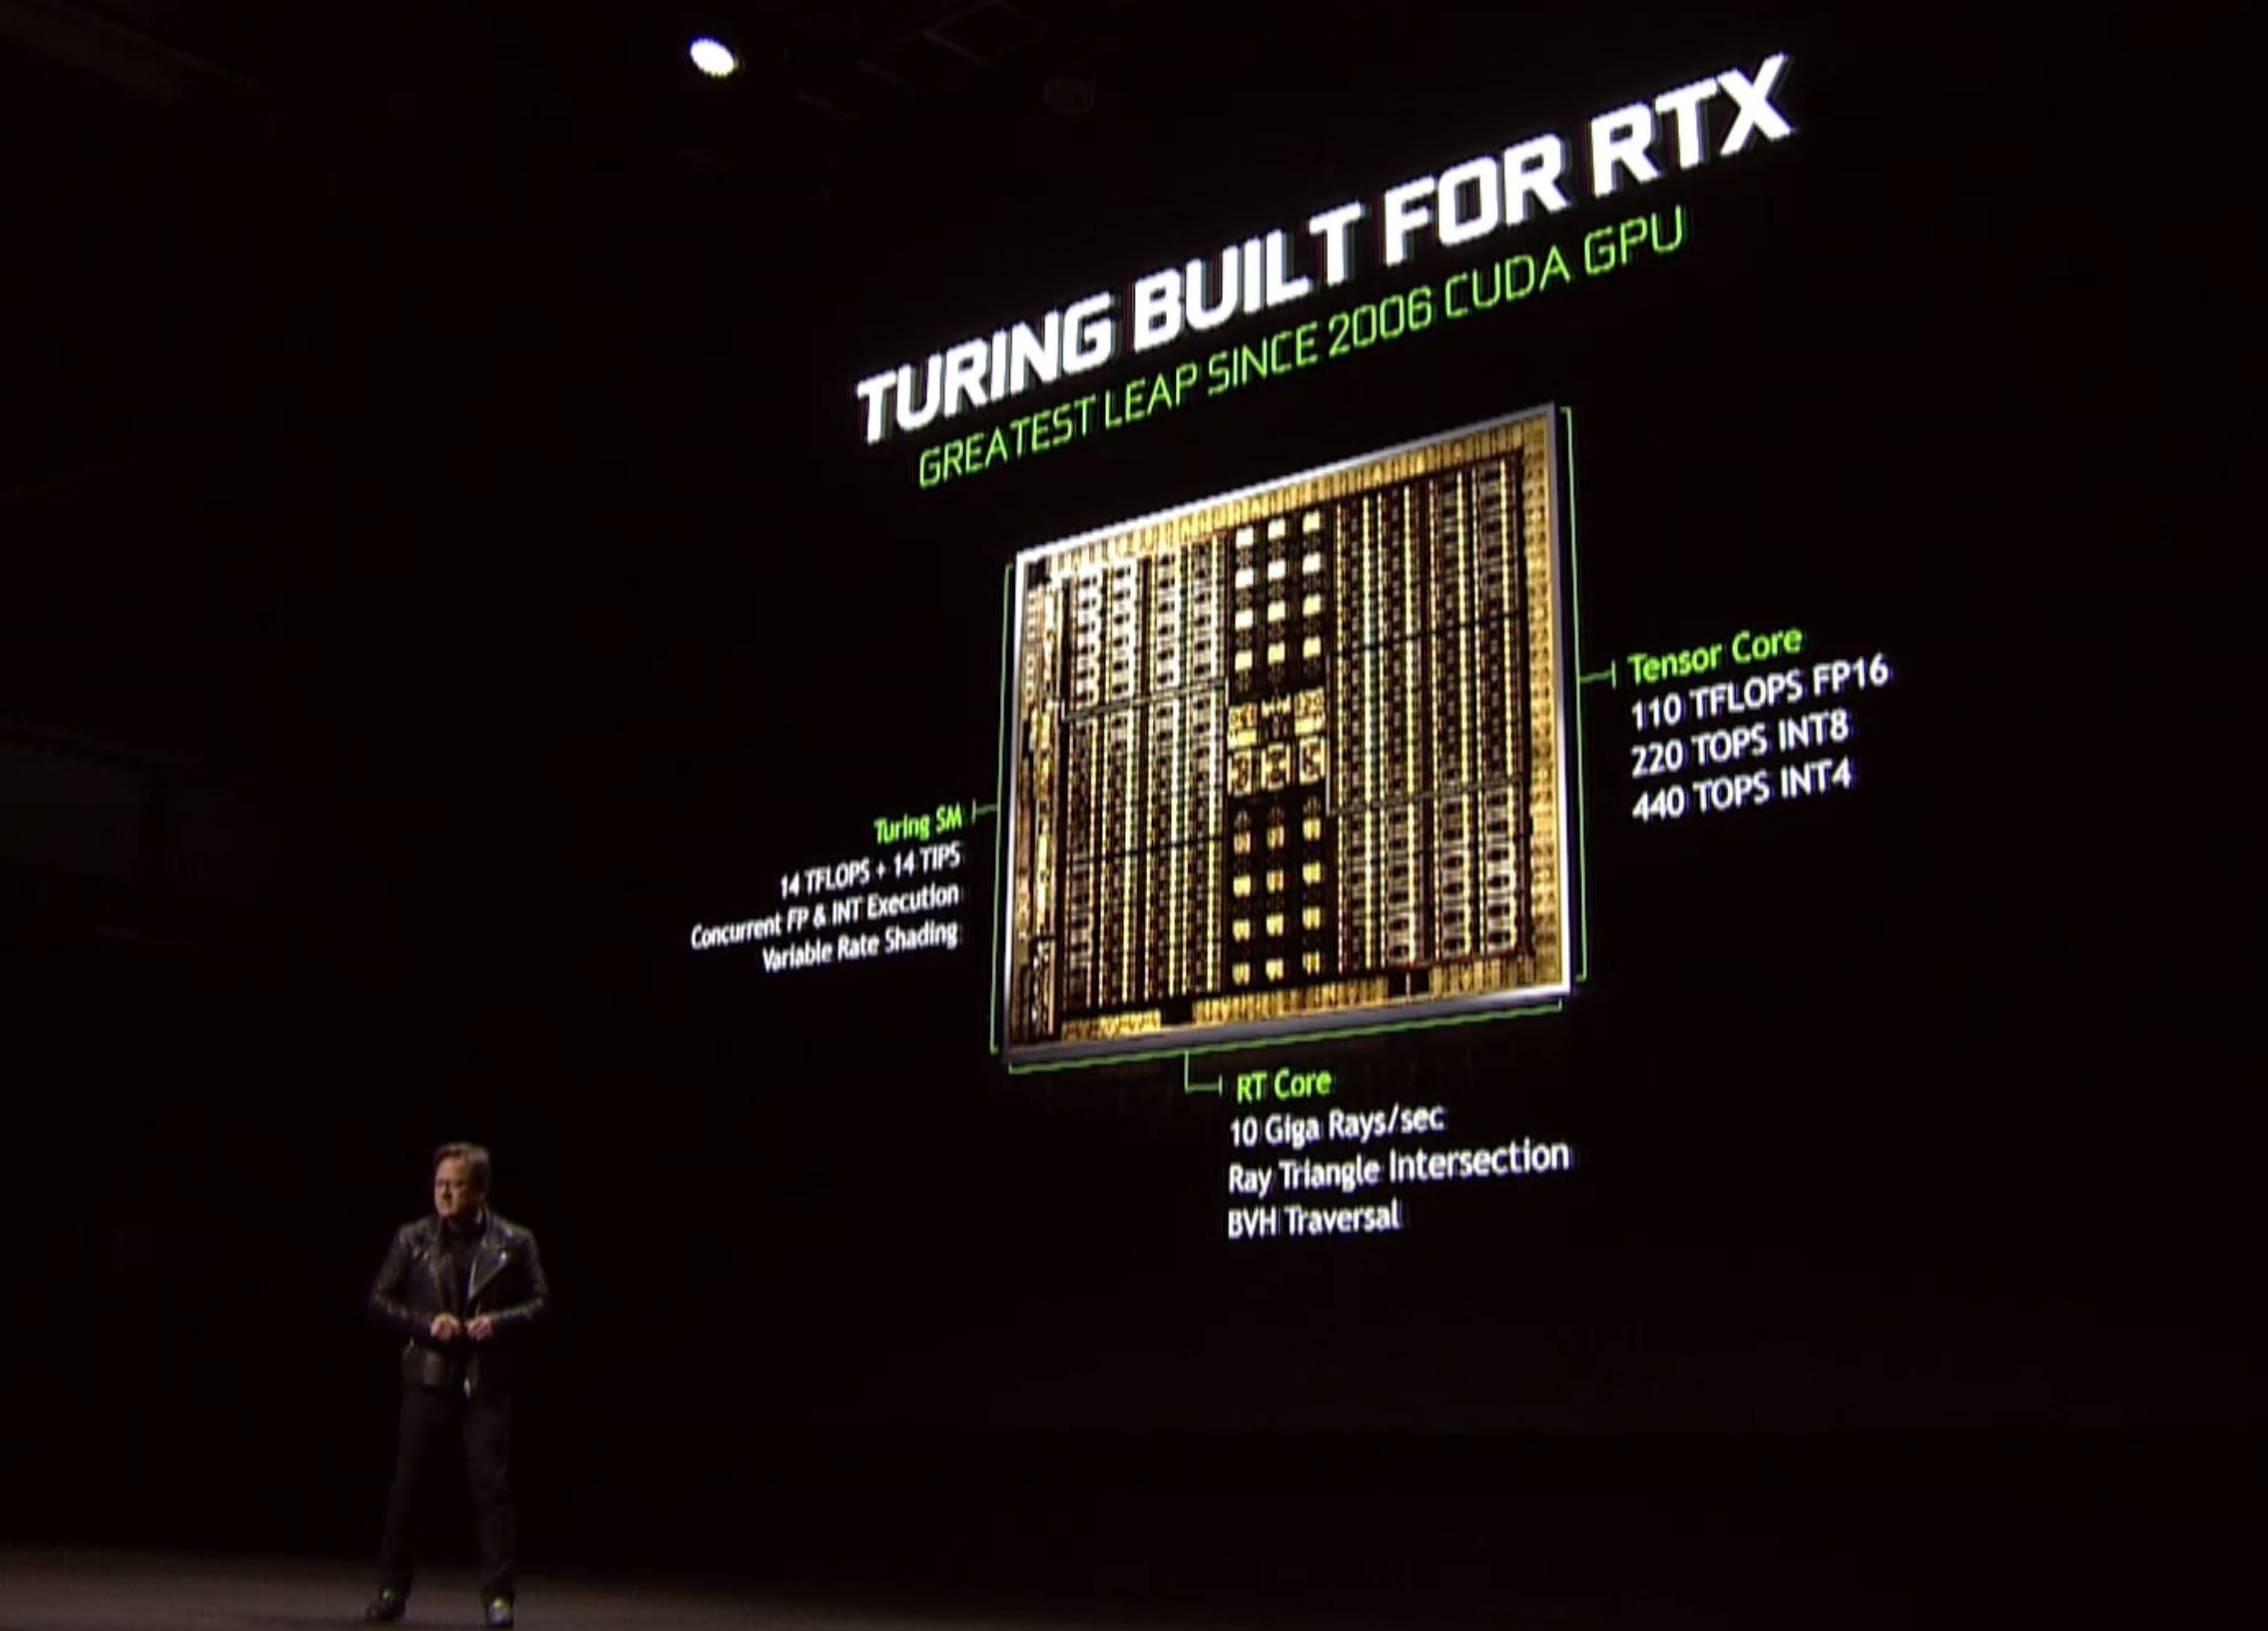 Karşınızda GeForce RTX 2080 Ti, RTX 2080 ve RTX 2070 ekran kartları